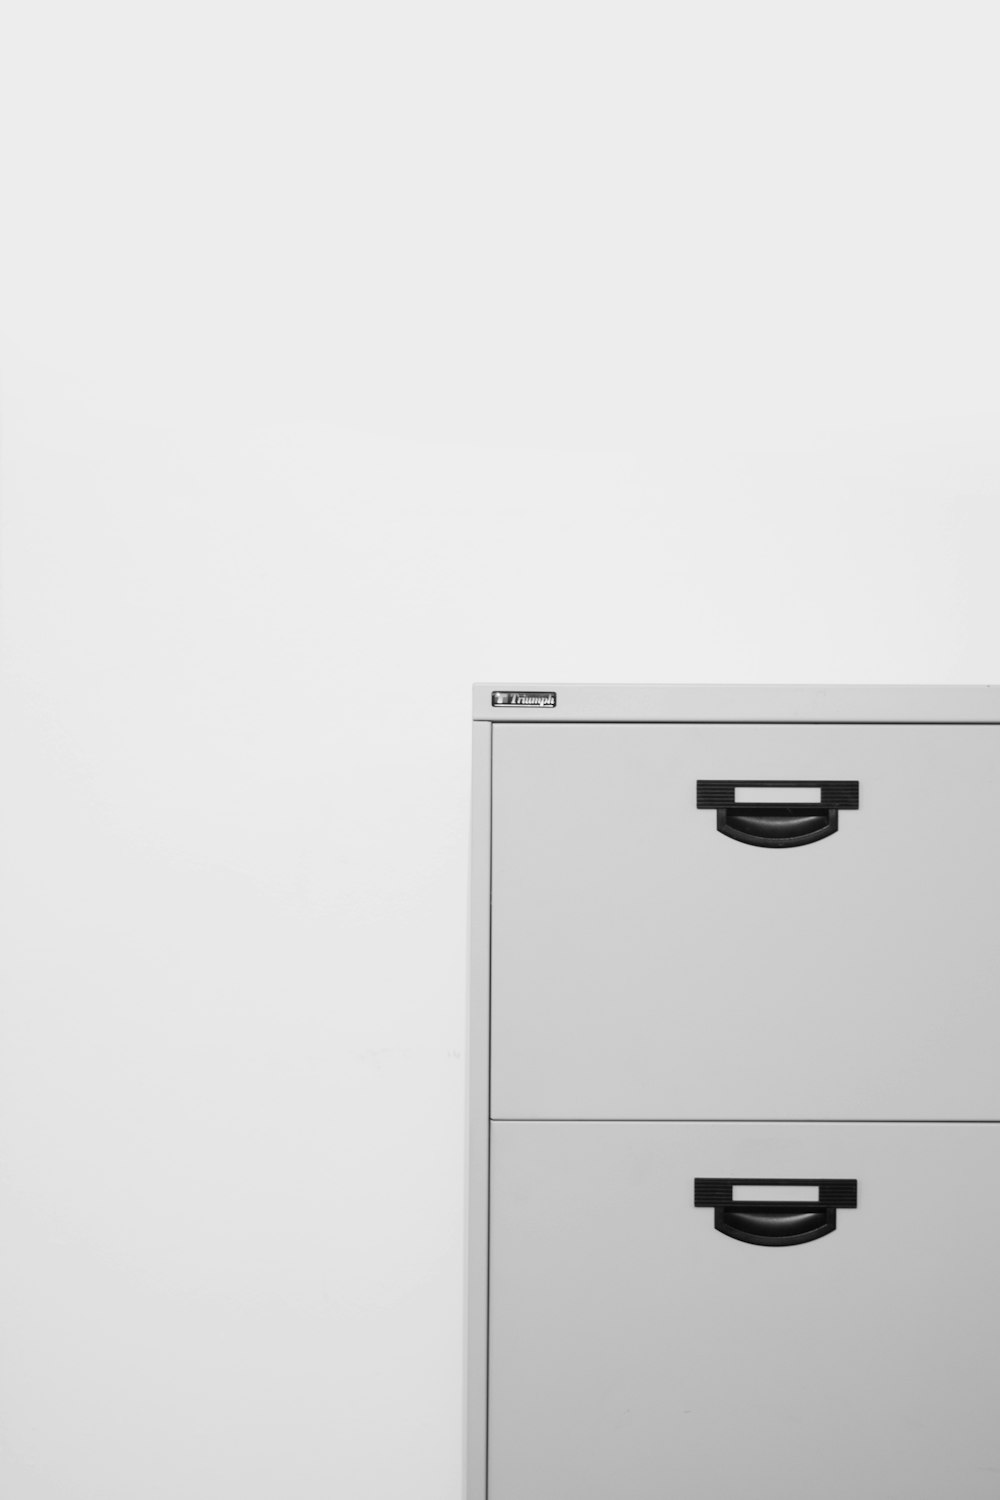 gray metal locker on white surface